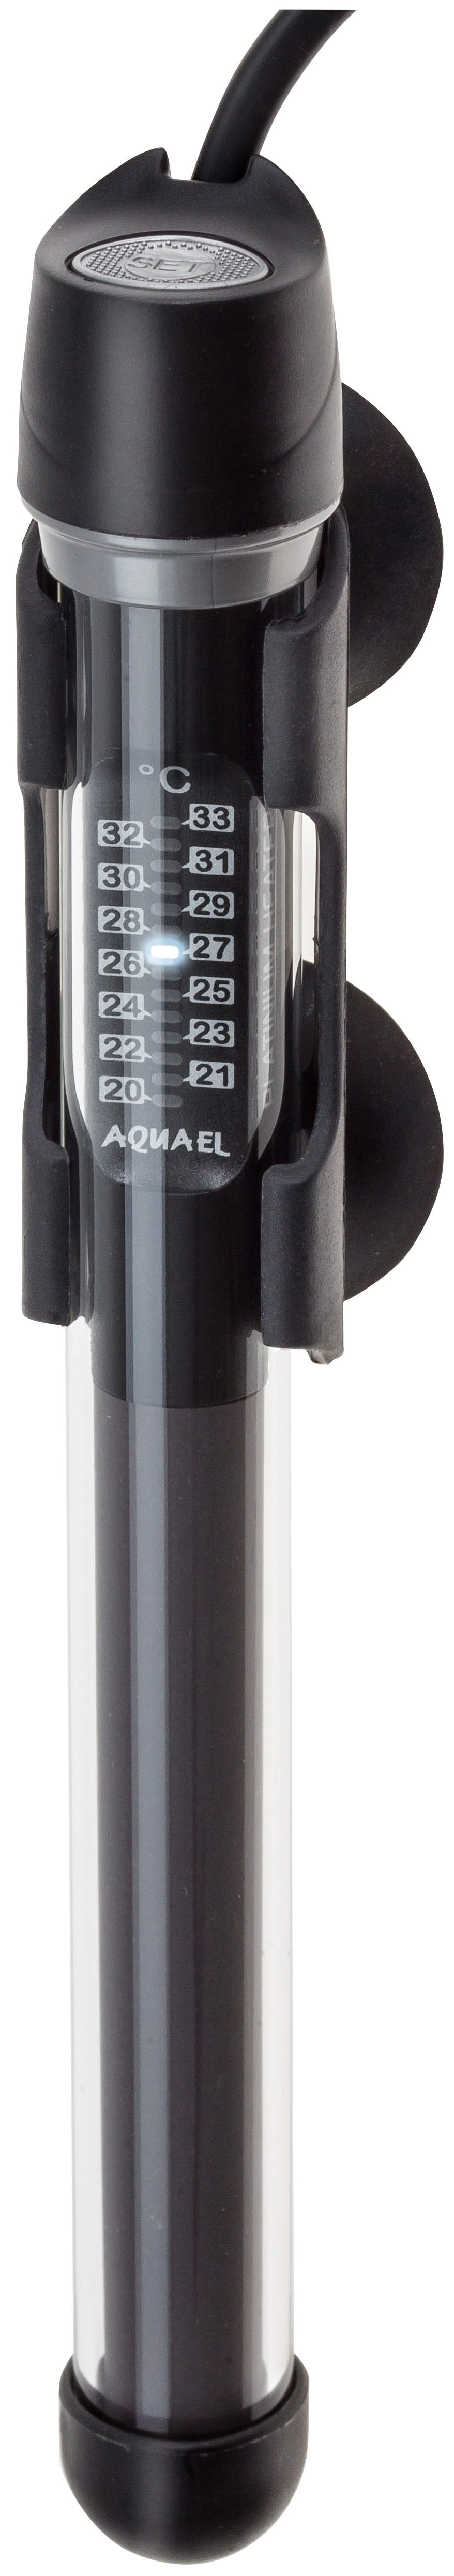 Нагреватель для аквариума Aquael Platinium Heater стеклянный, регулируемый 75 Вт 35-75 л